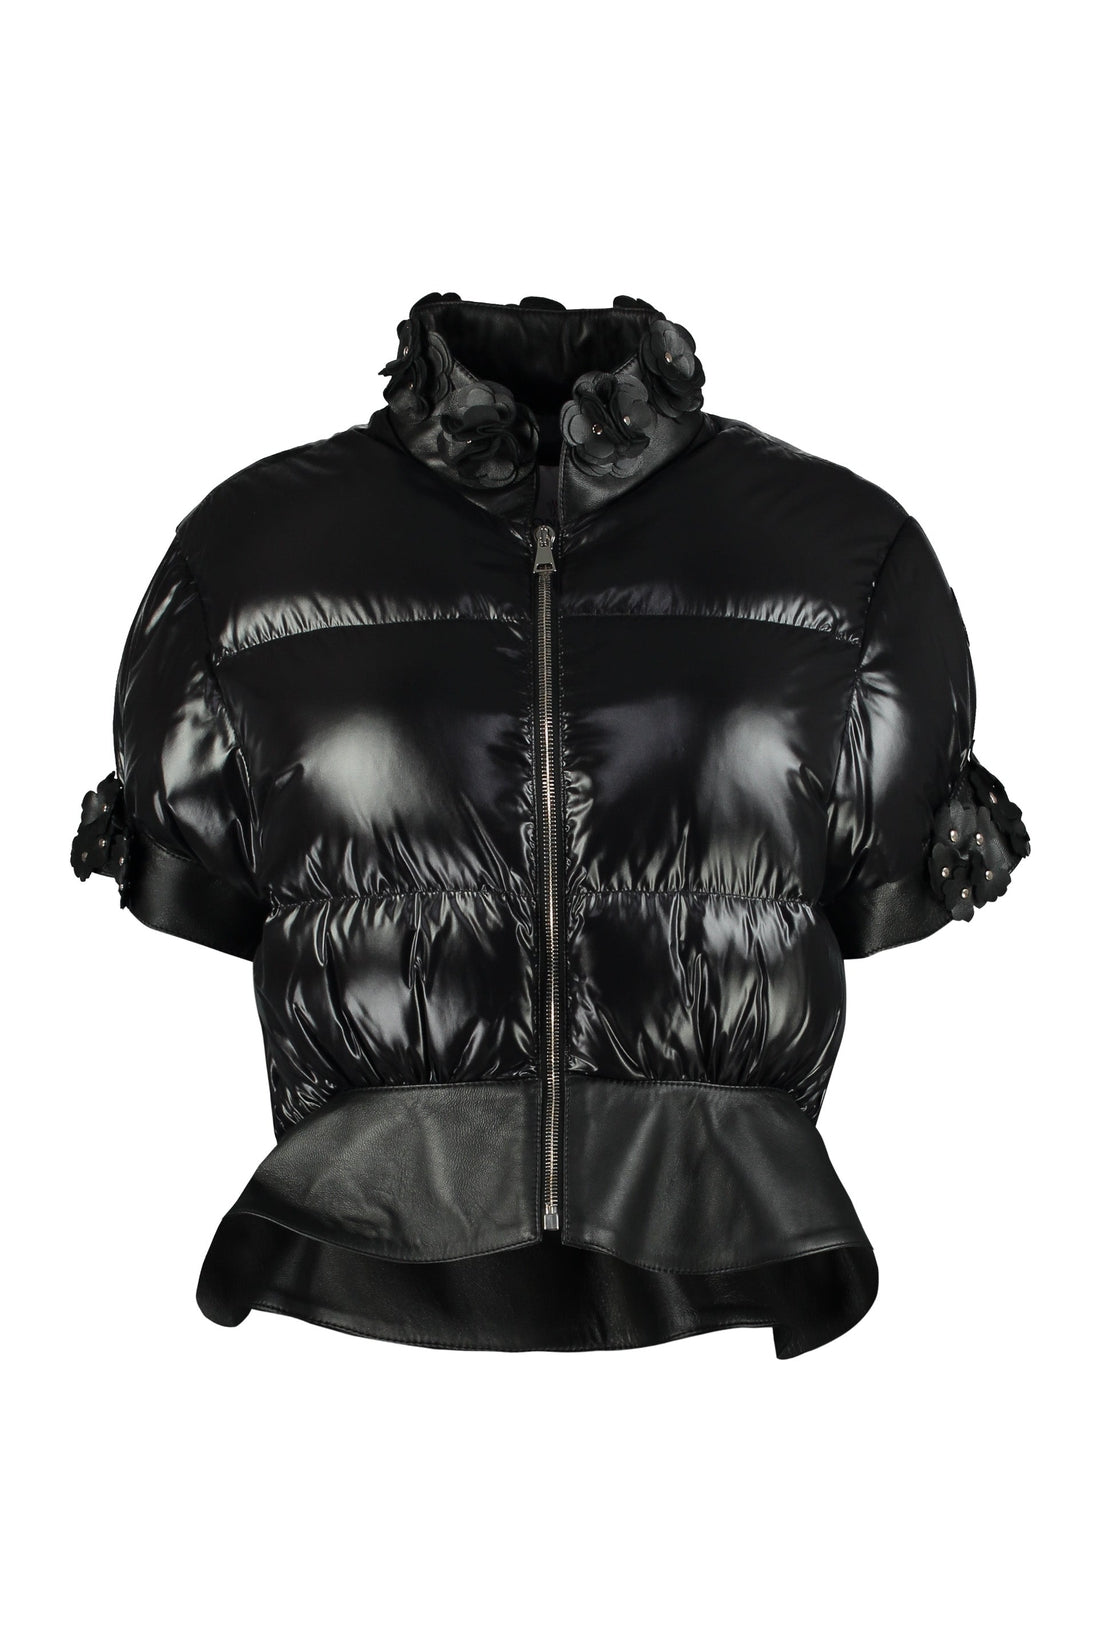 Moncler Genius-OUTLET-SALE-4 Moncler Simone Rocha - Onyx full zip down jacket-ARCHIVIST